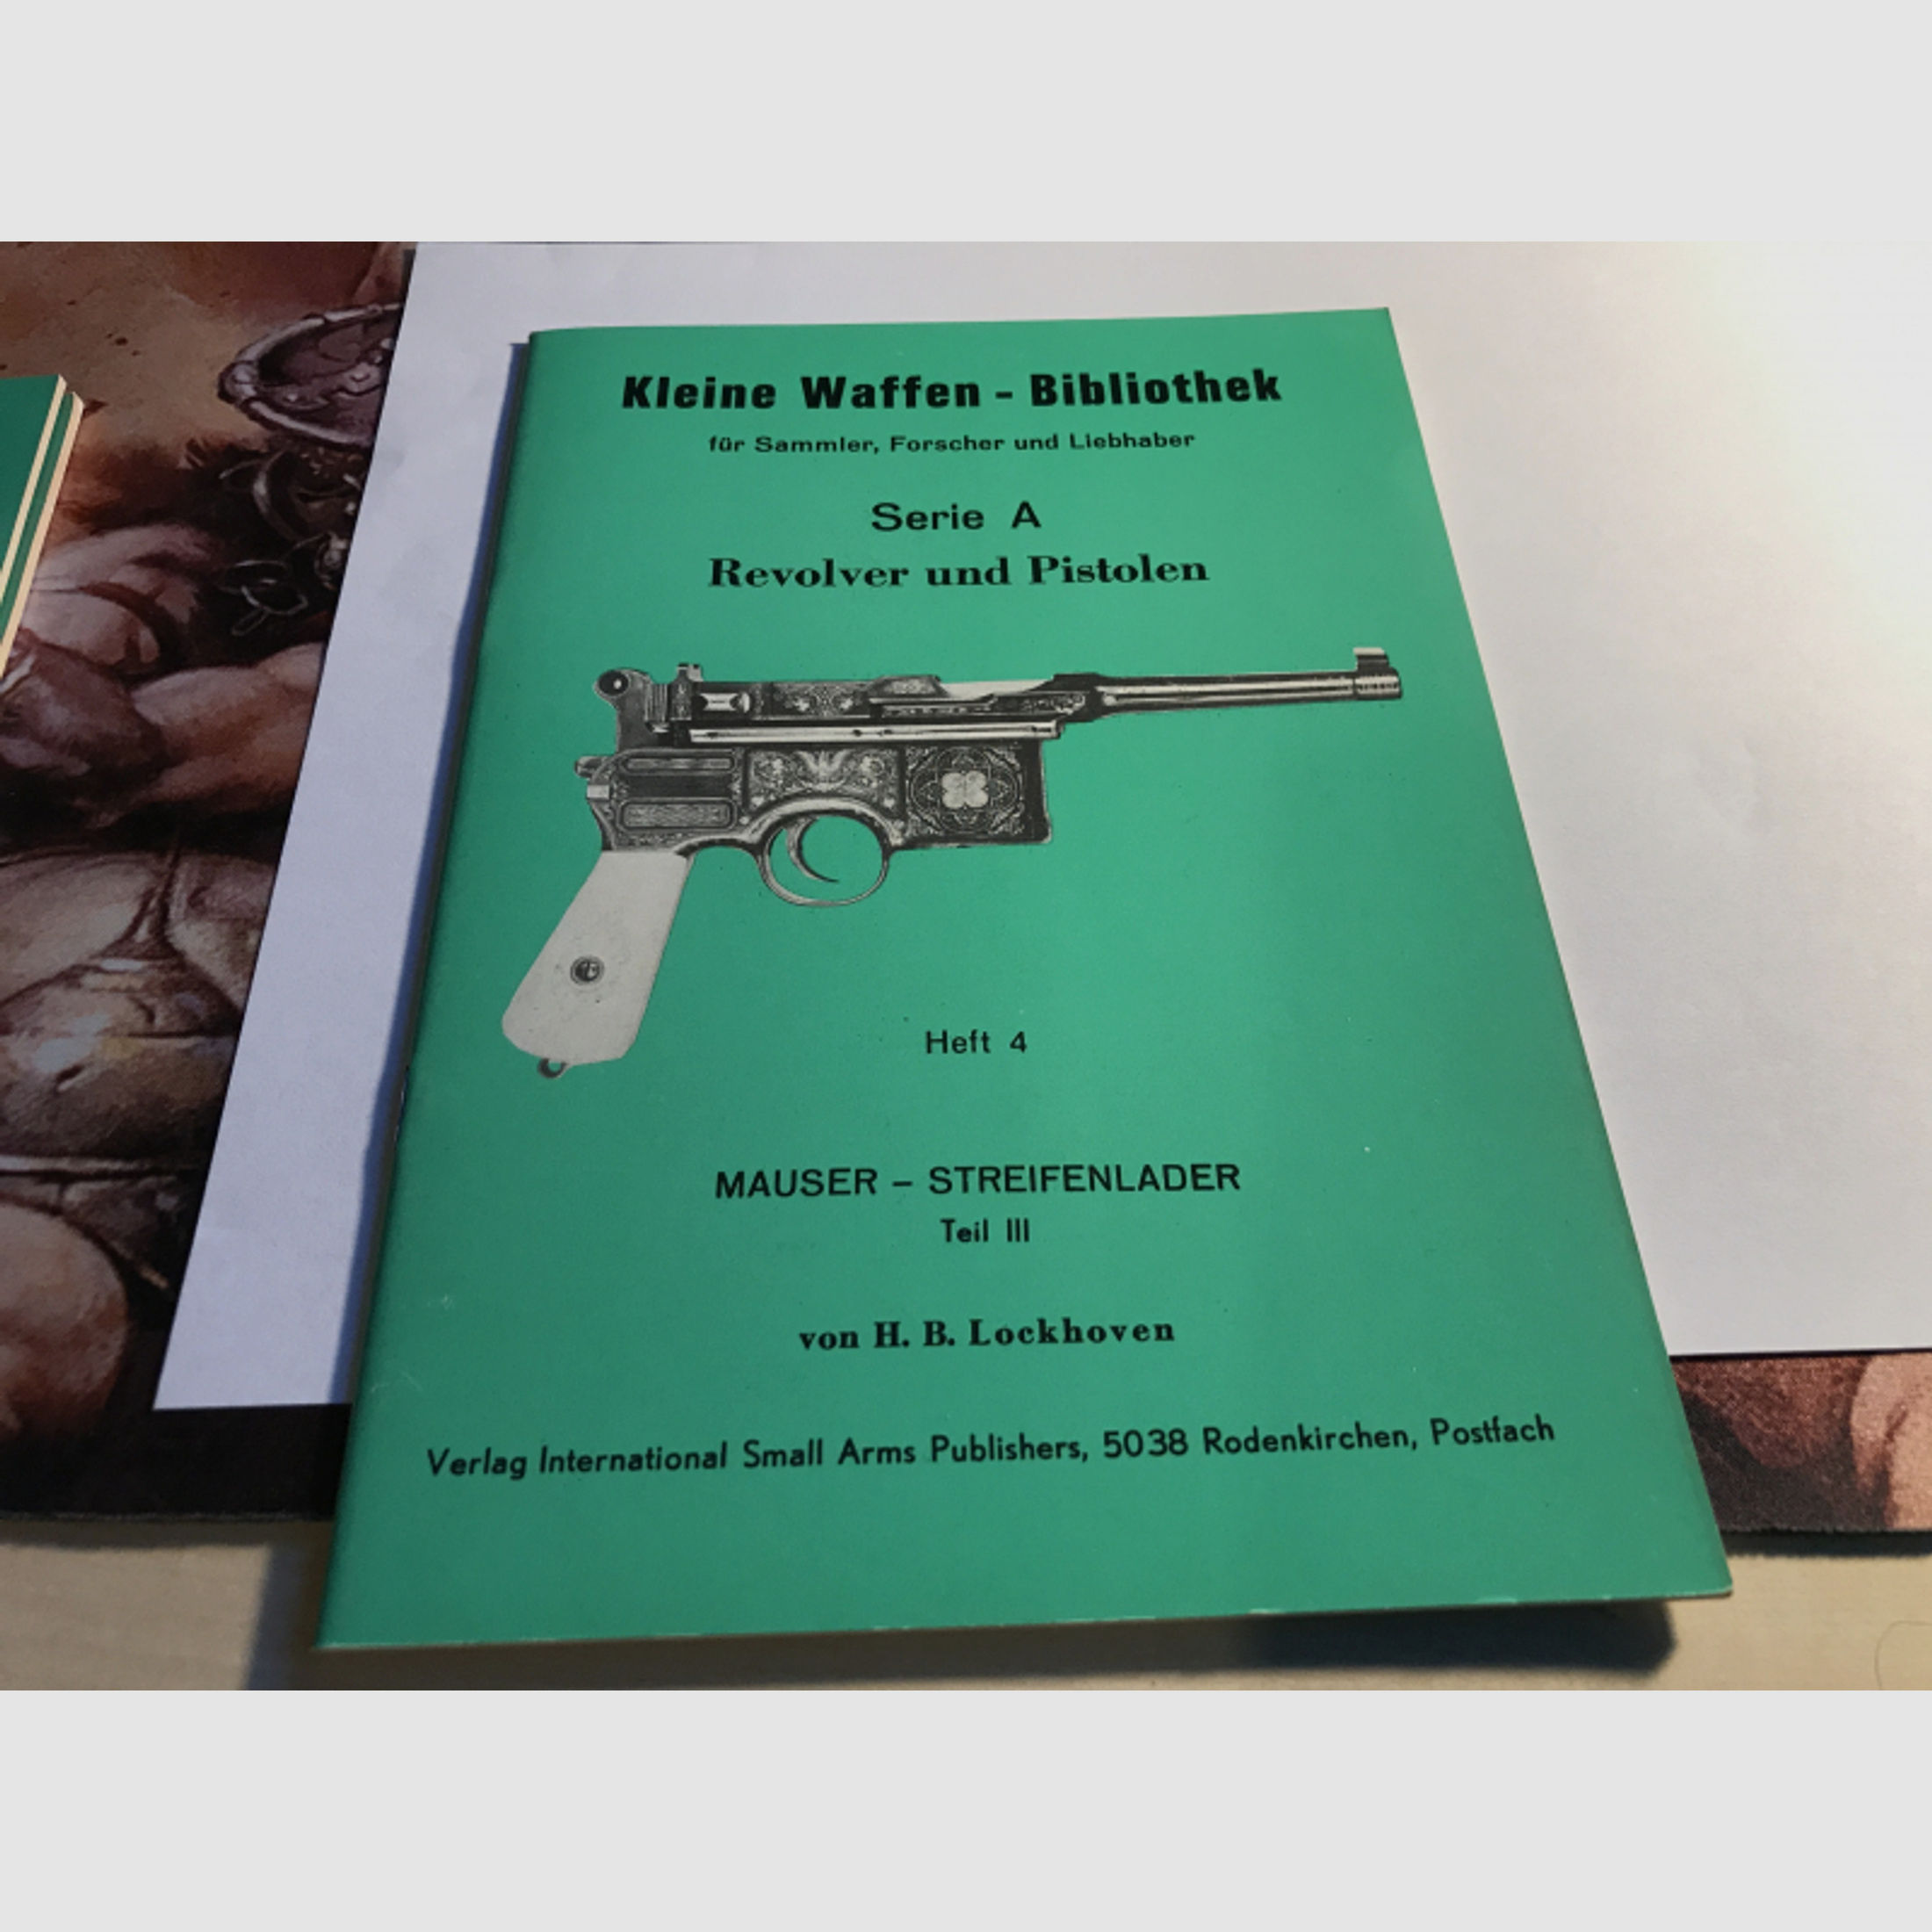 Kleine Waffen-Bibliothek, Heft 4, Mauser-Streifenlader Teil III